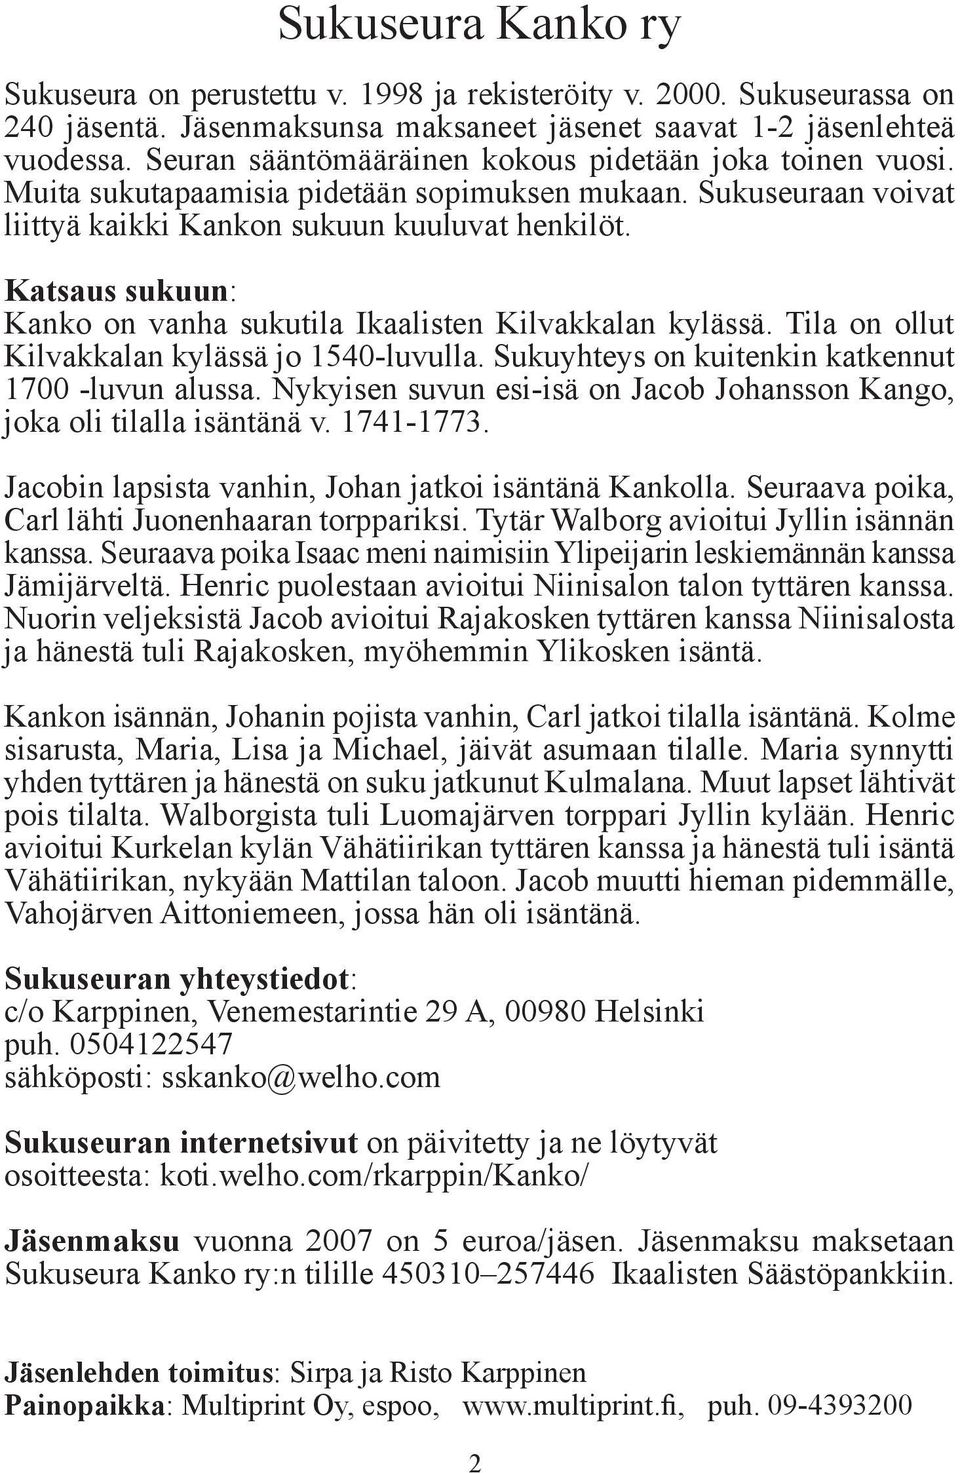 Katsaus sukuun: Kanko on vanha sukutila Ikaalisten Kilvakkalan kylässä. Tila on ollut Kilvakkalan kylässä jo 1540-luvulla. Sukuyhteys on kuitenkin katkennut 1700 -luvun alussa.